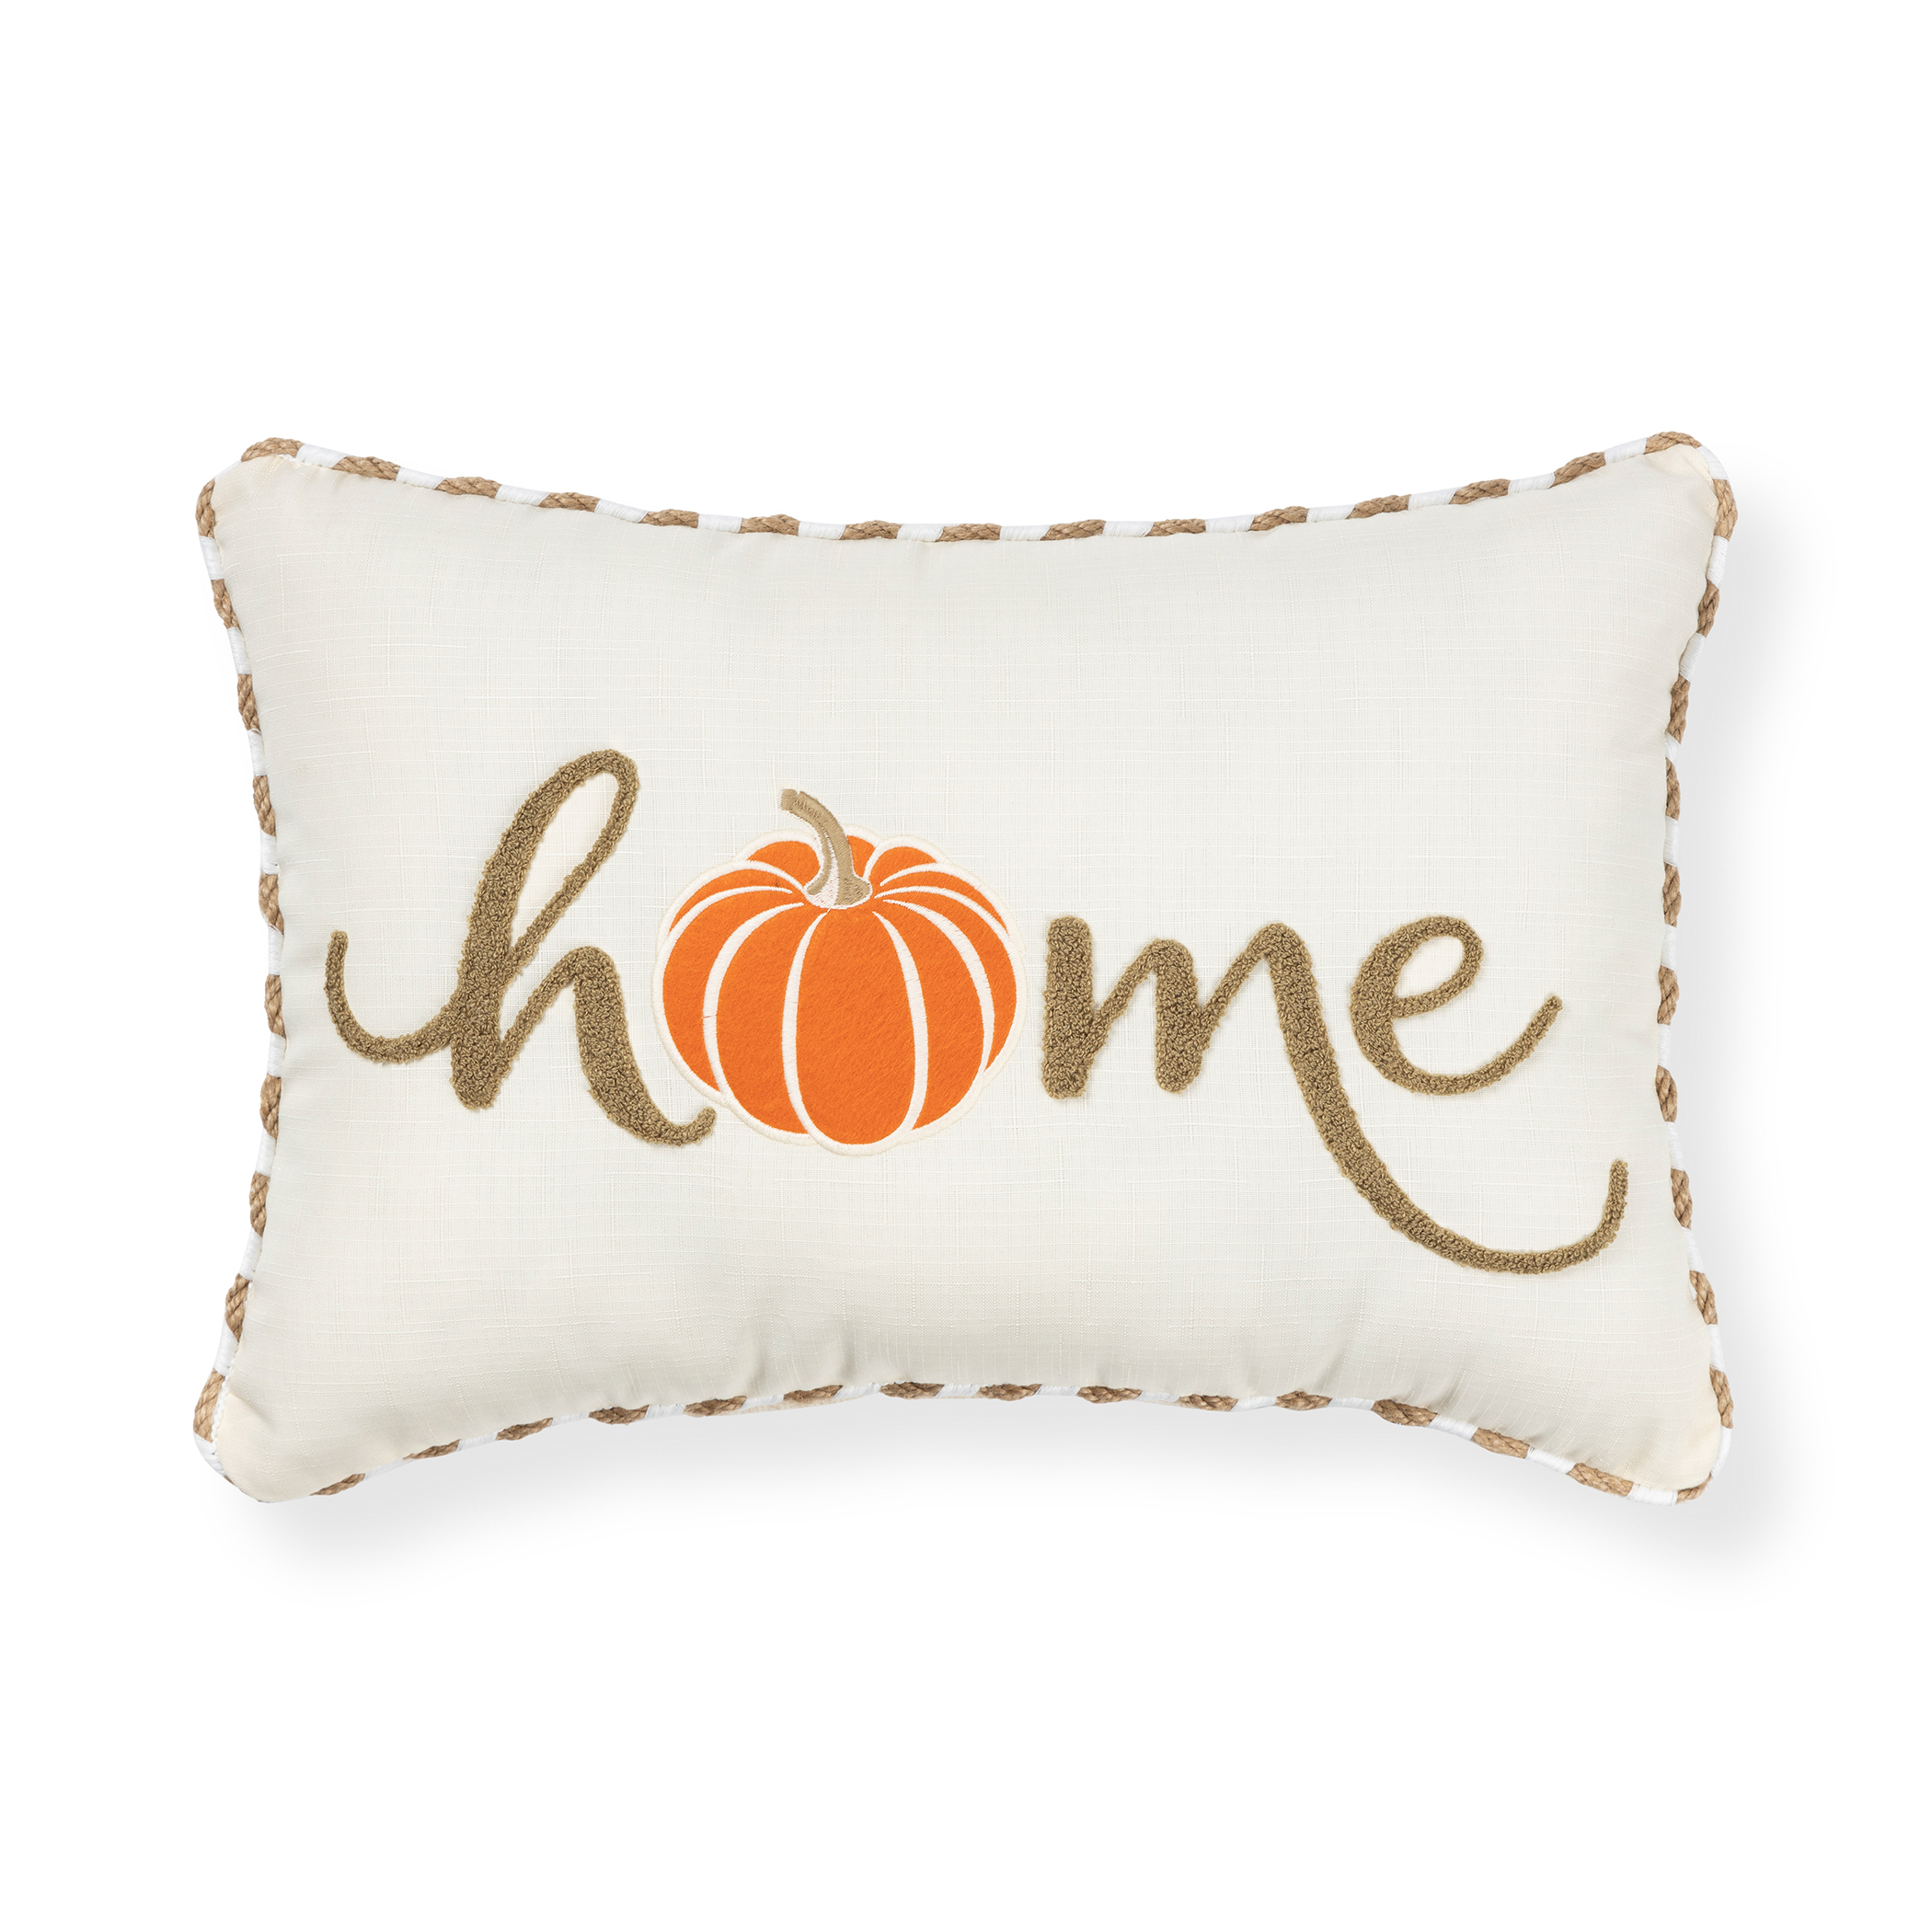 Better Homes & Gardens Home Harvest Pumpkin Outdoor Pillow, 14" x 20" Oblong - image 1 of 6